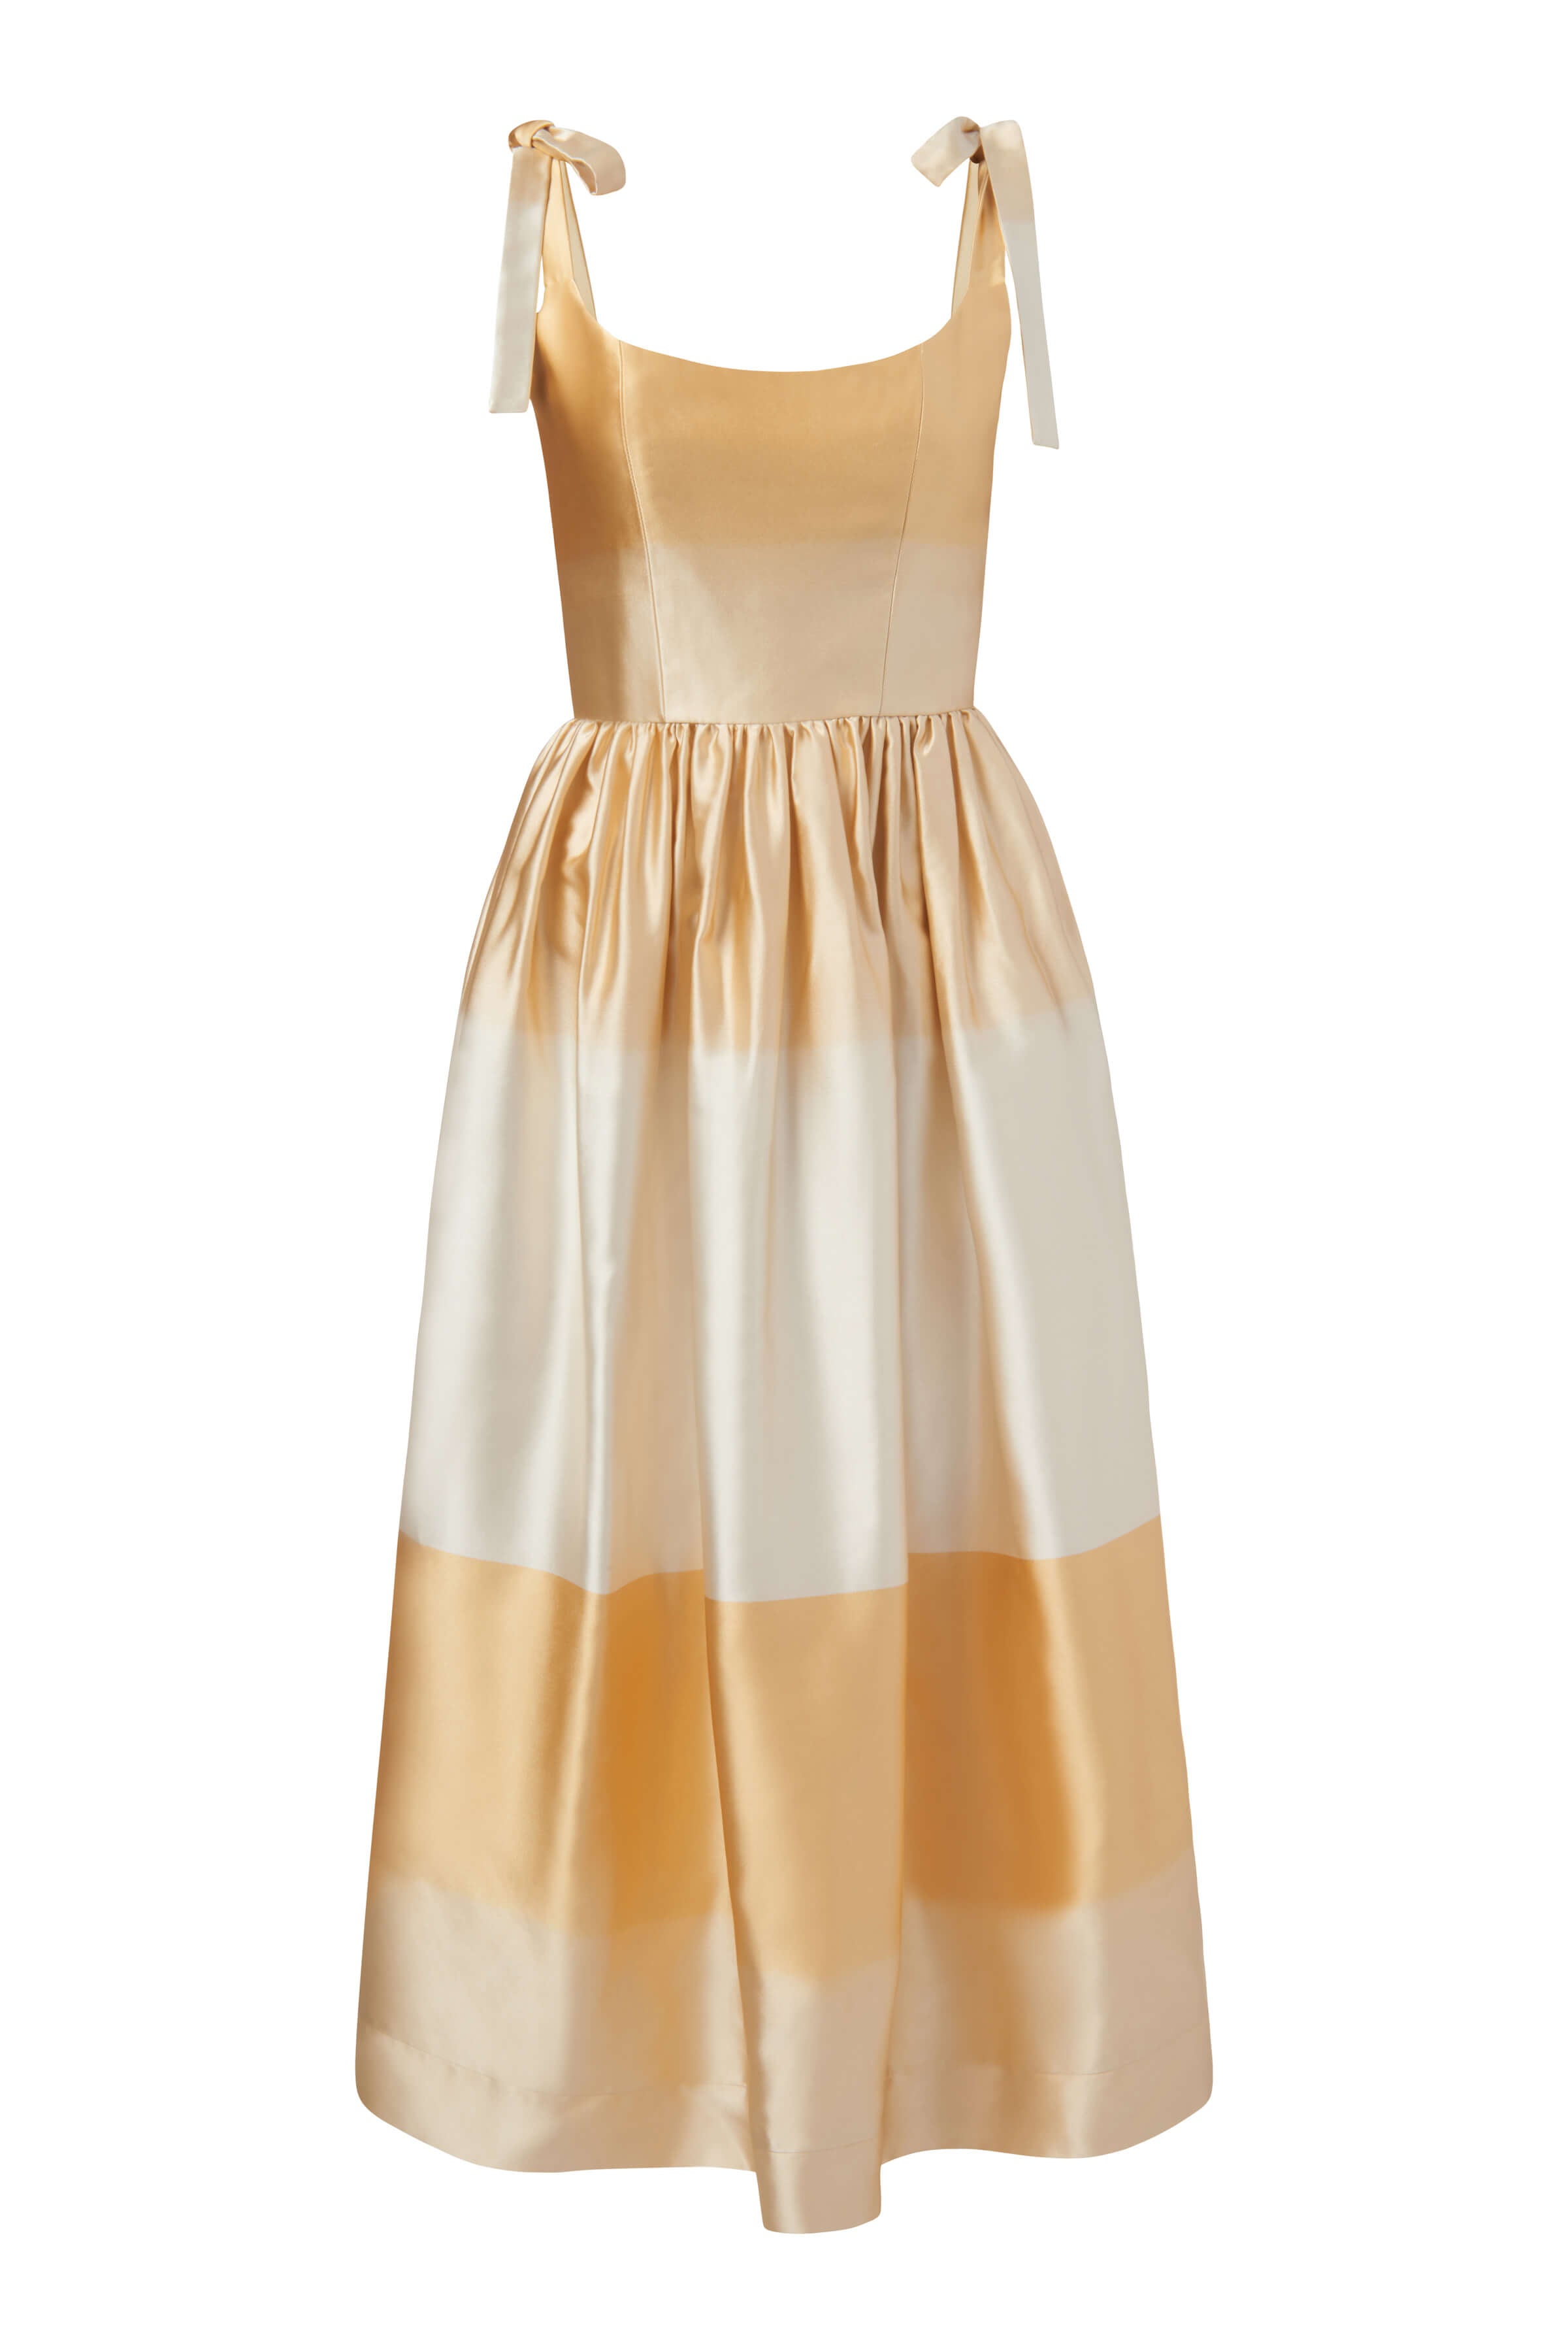 Apple Golden Ombré Dress With Tie Straps